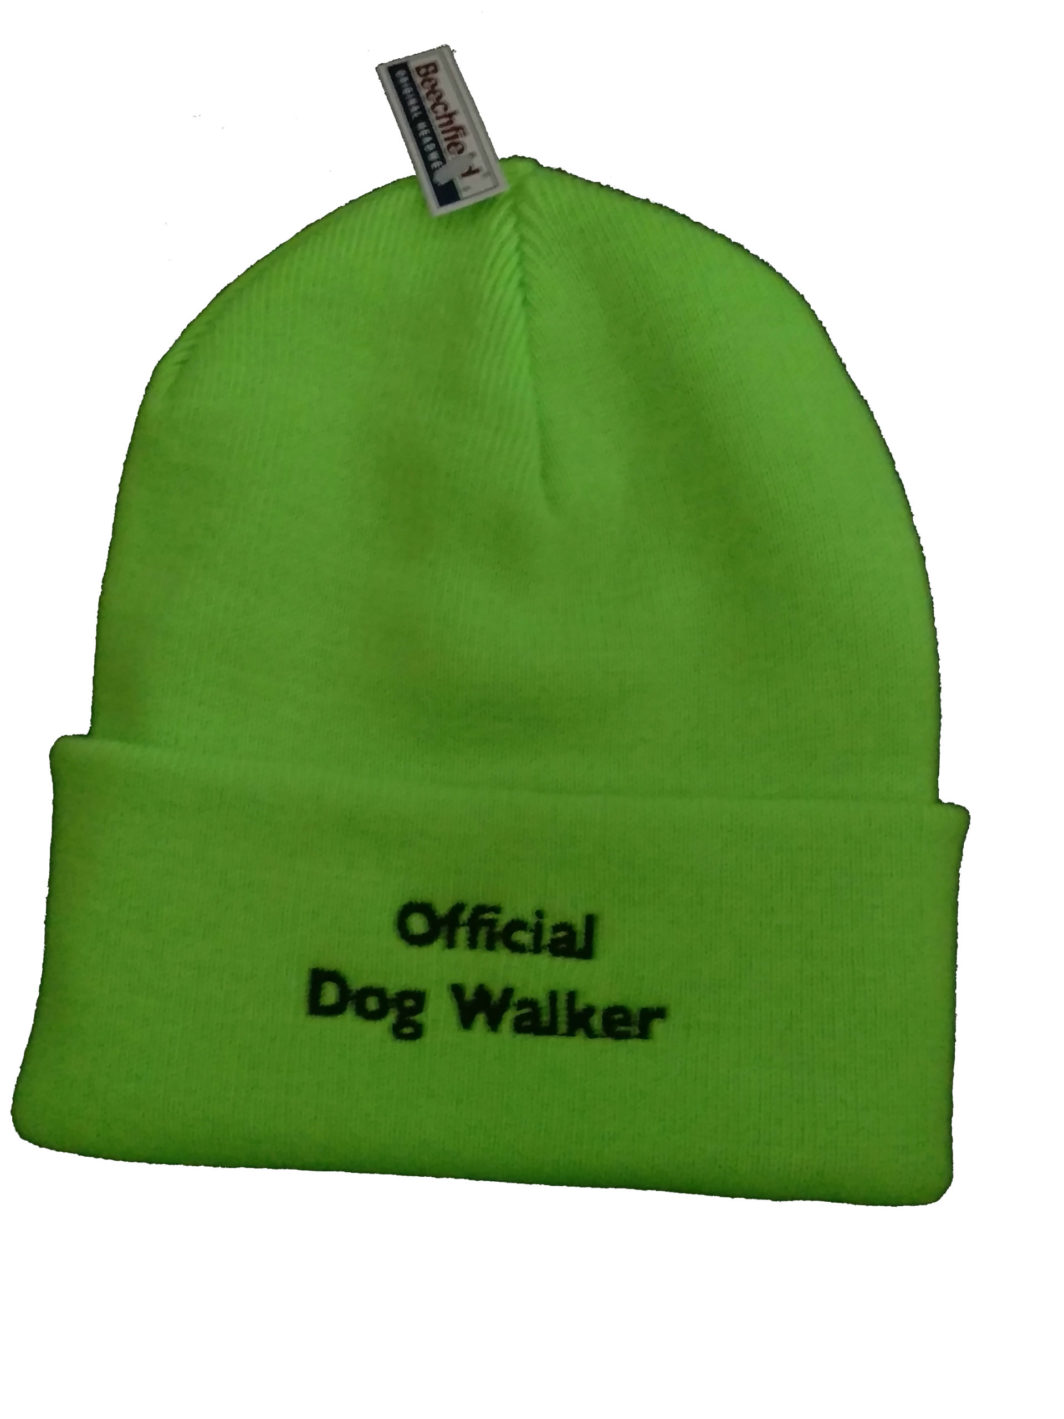 Official Dog Walker Hat Lime Green